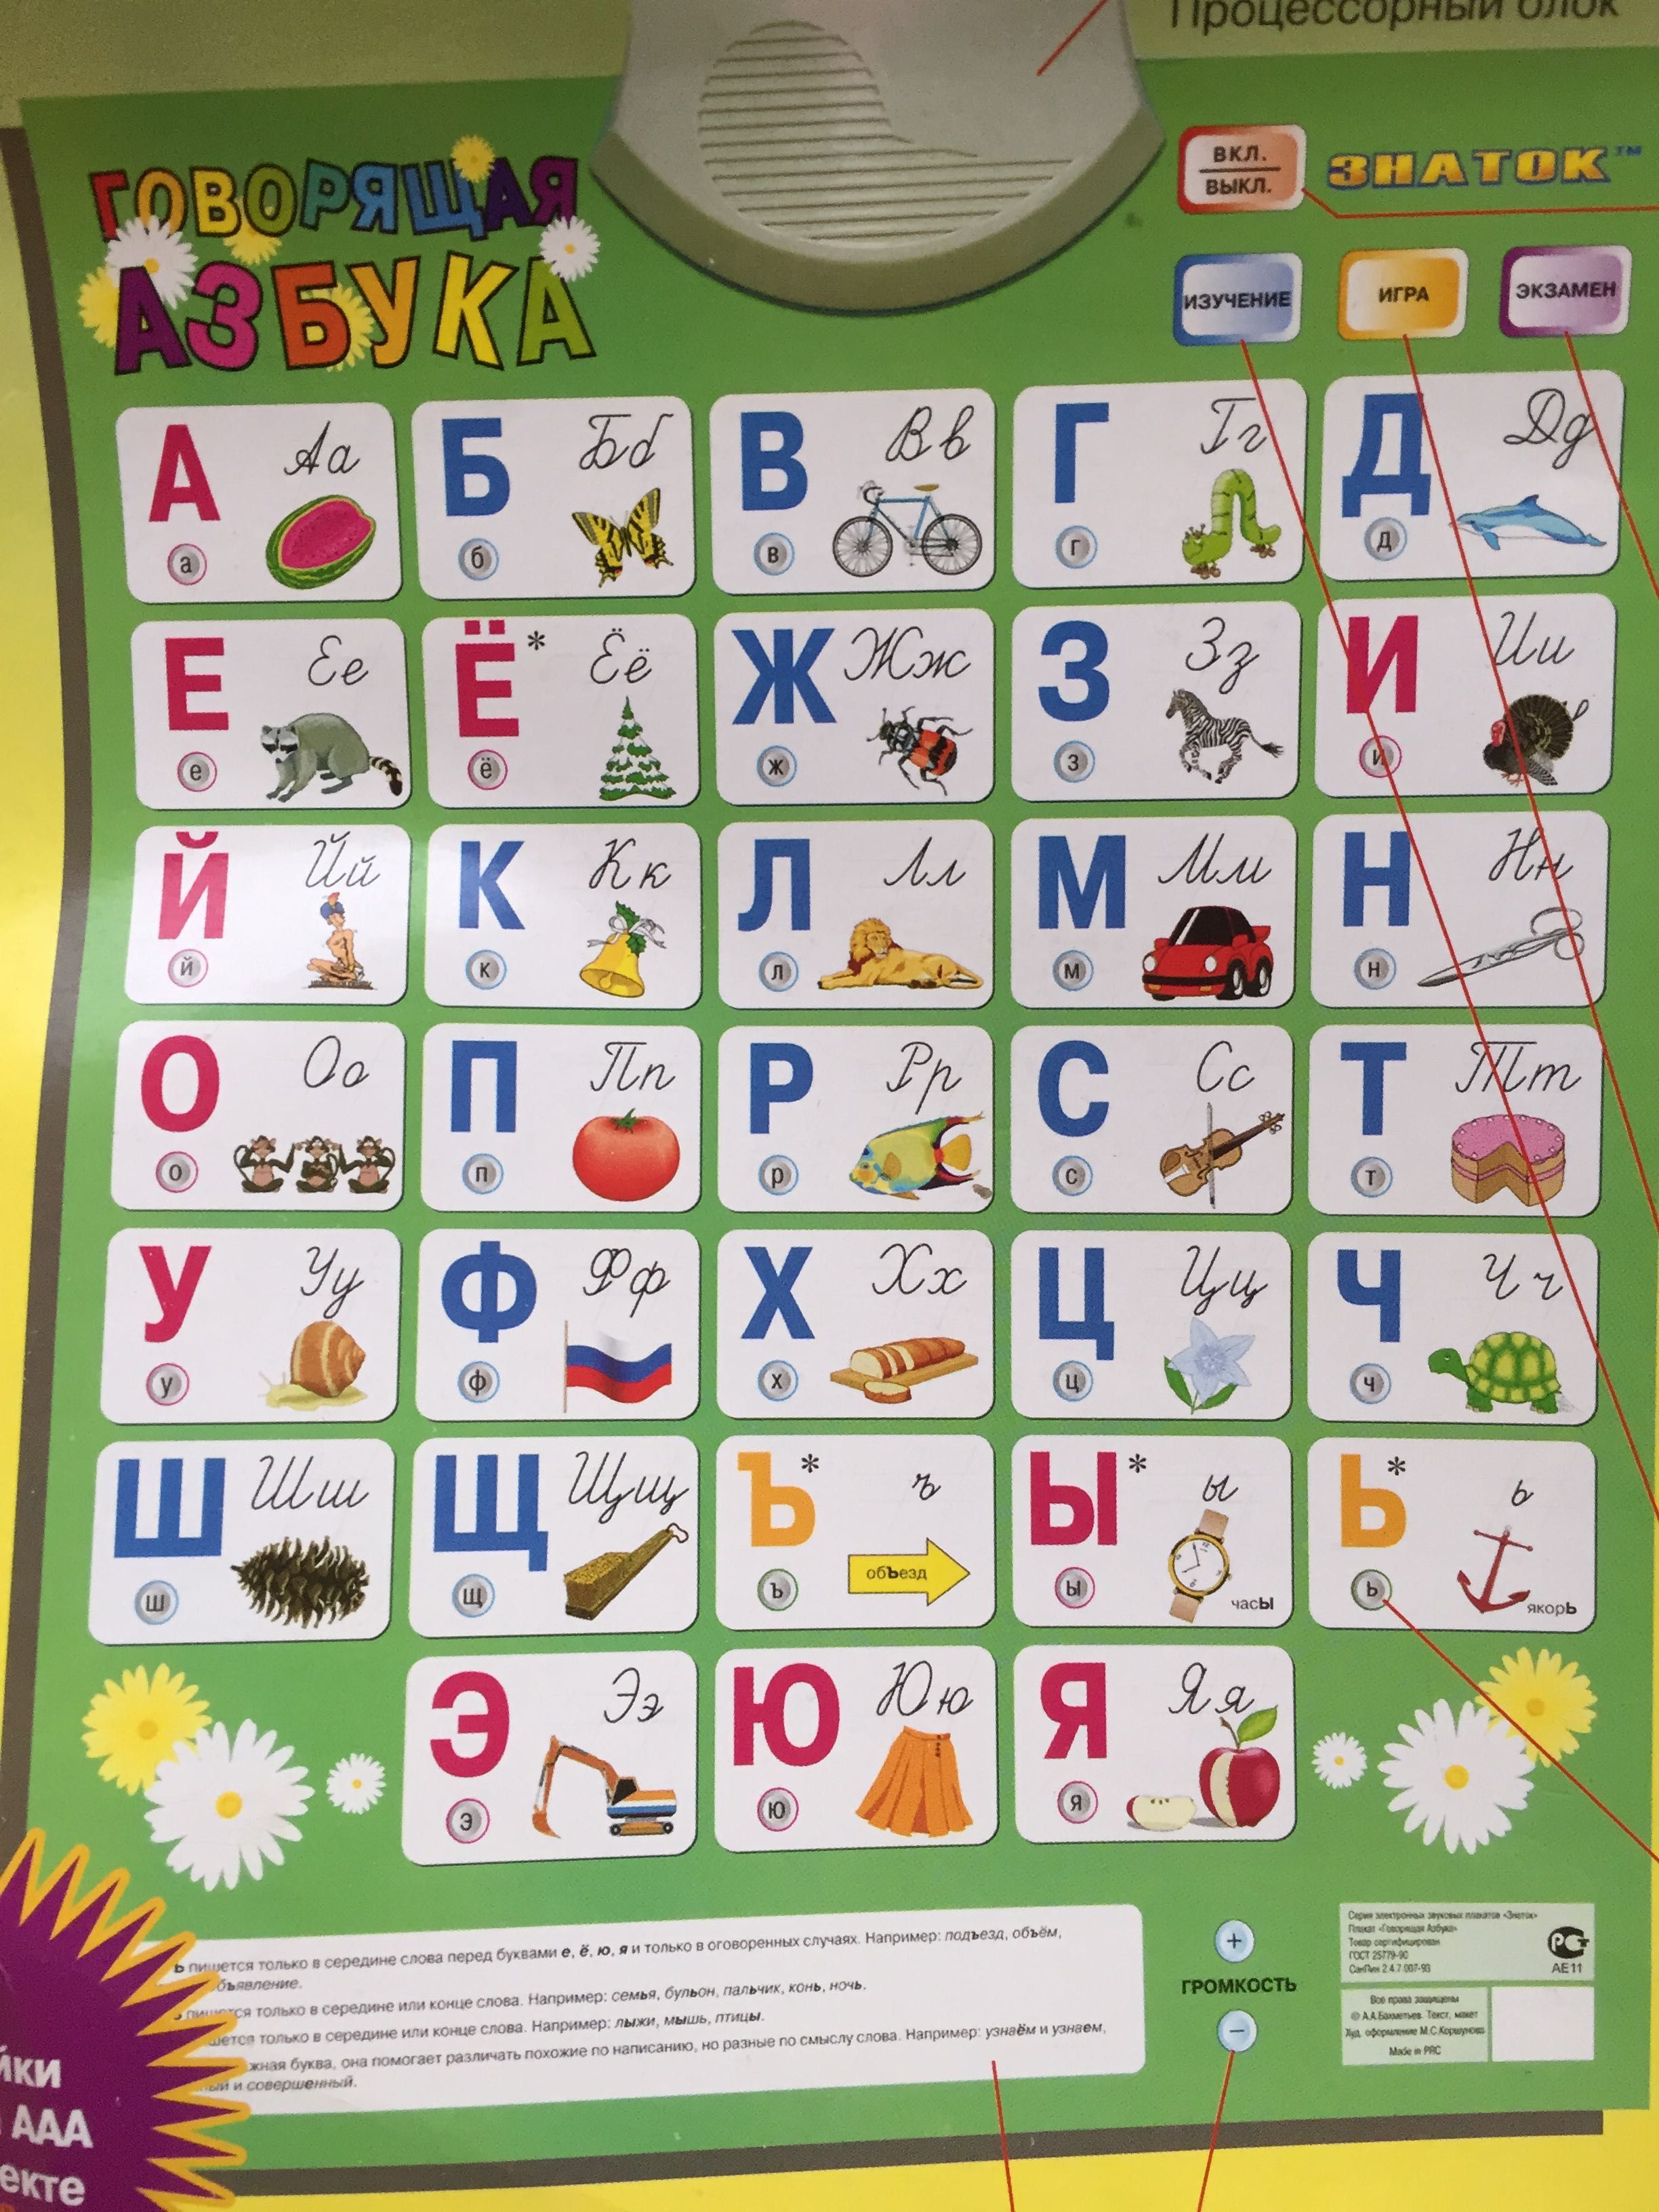 Говорящая азбука "Знаток" русский язык